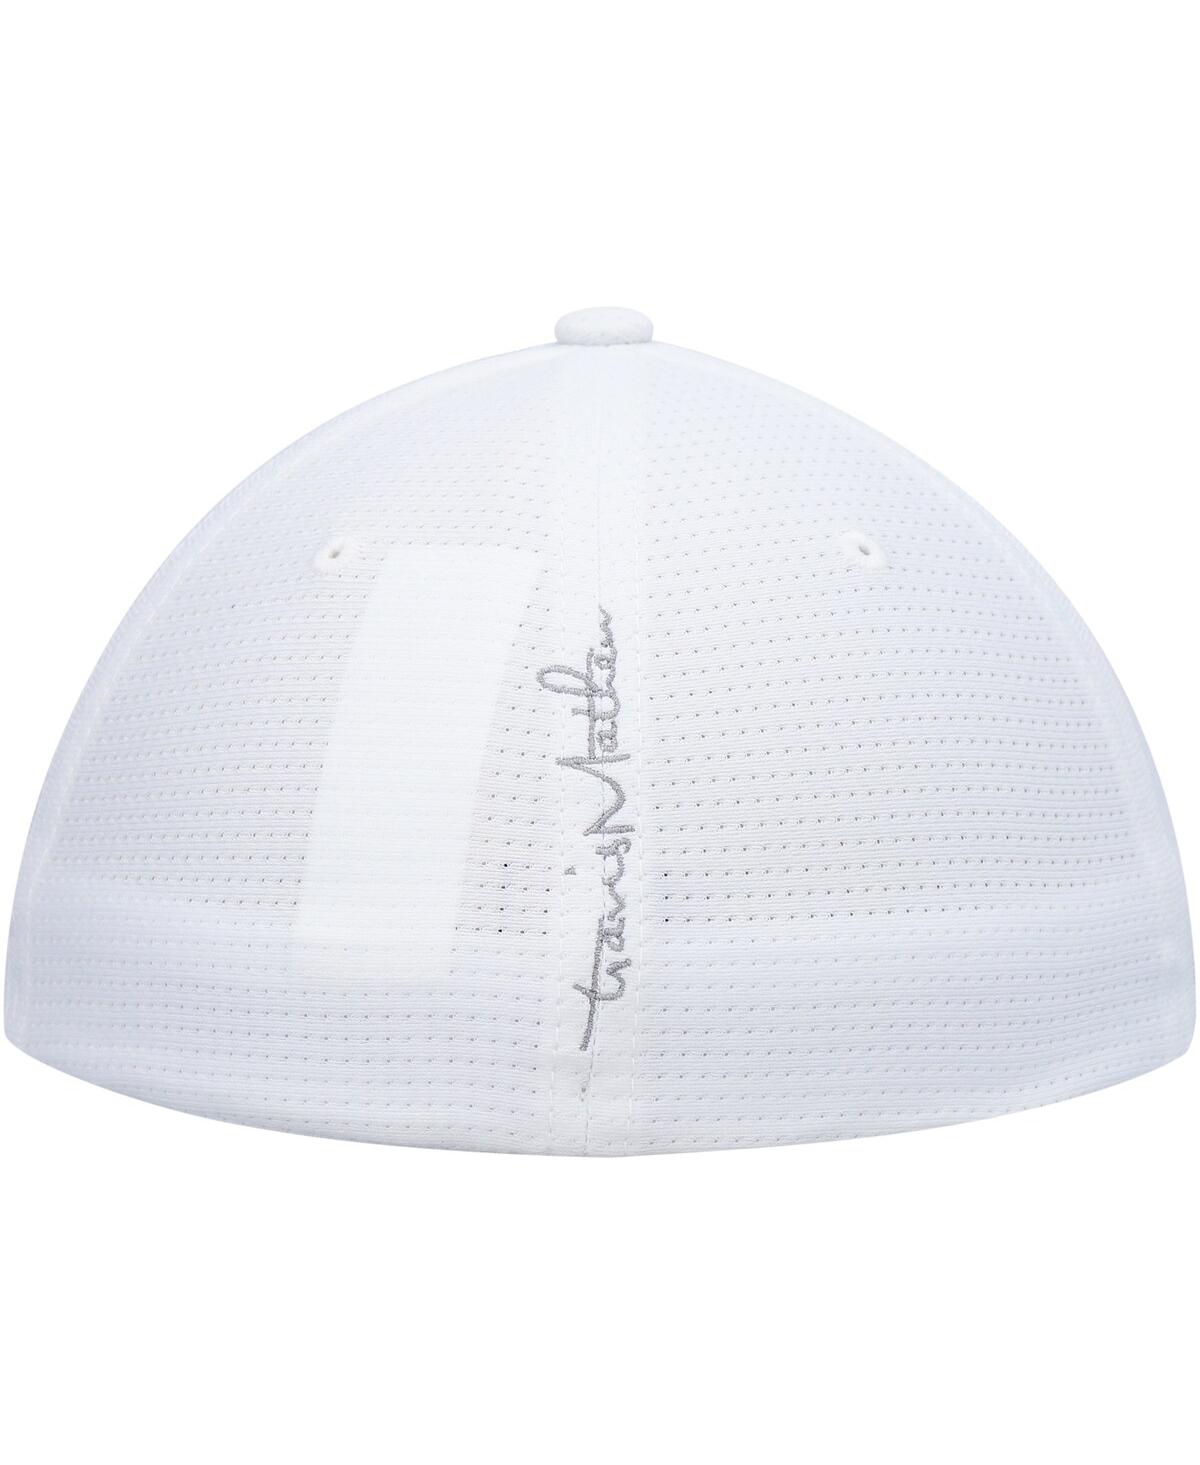 Shop Travis Mathew Men's  White Nassau Flex Hat